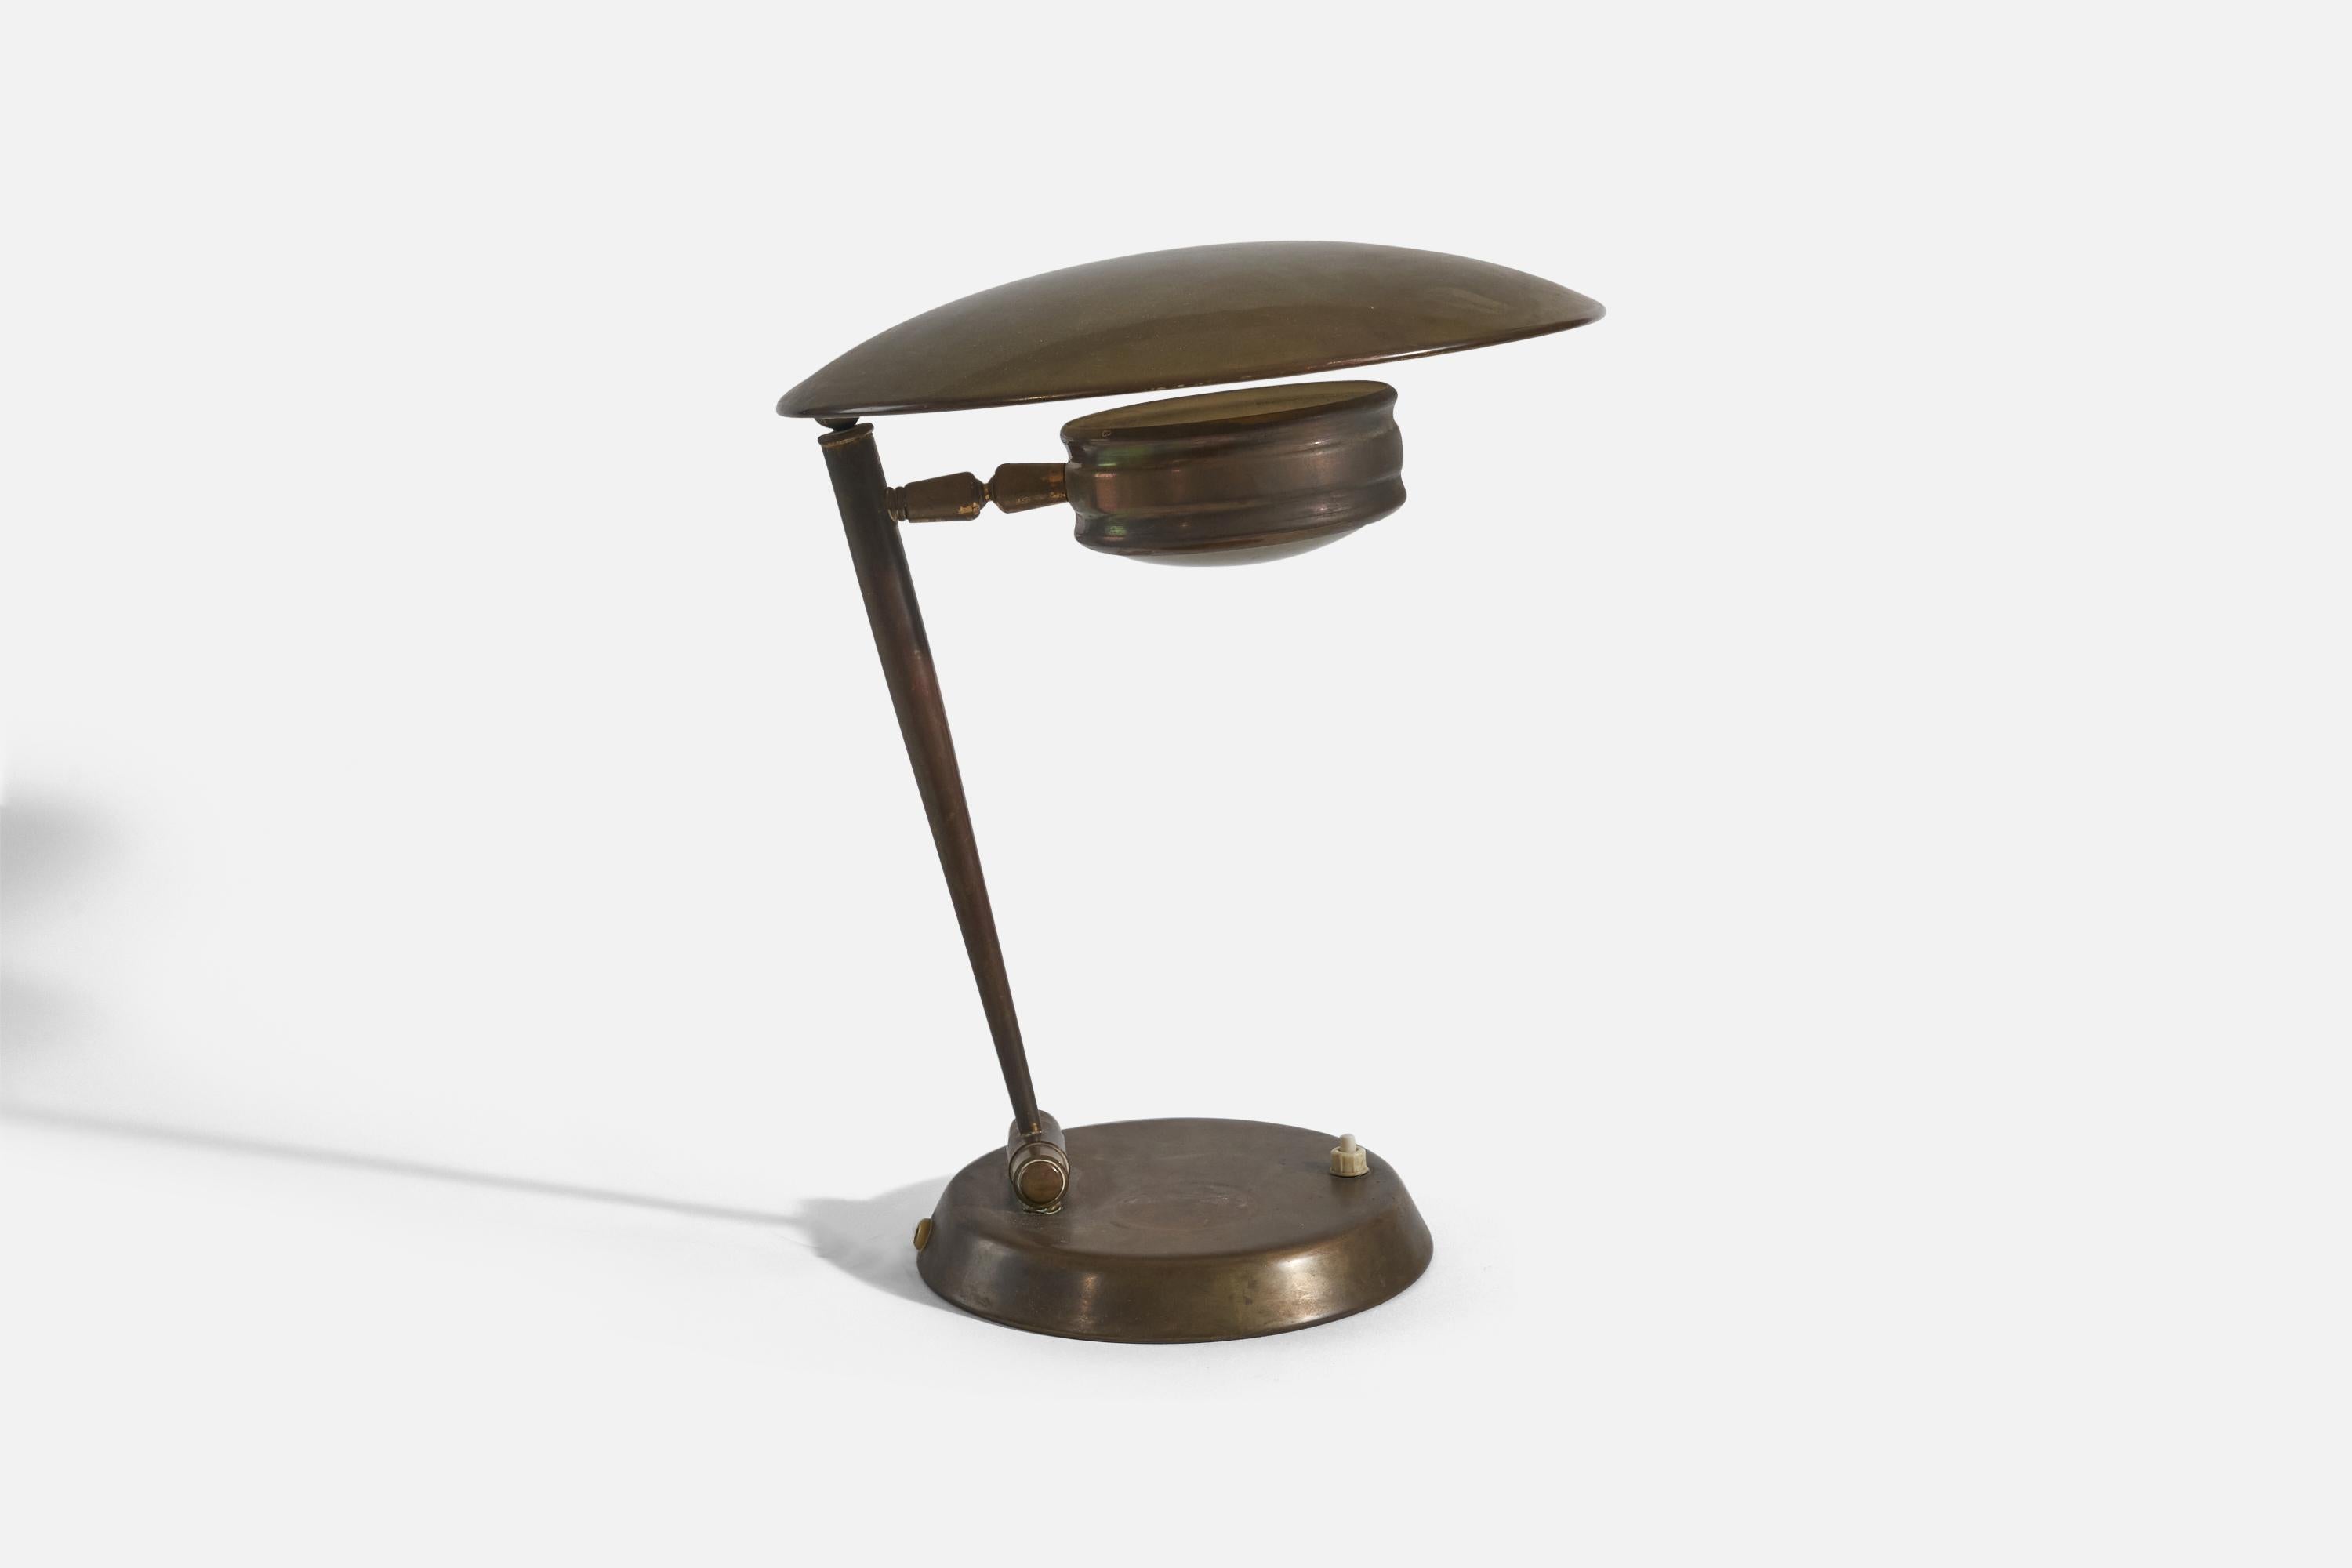 Lampe de table réglable en laiton et verre, conçue et produite en Italie, années 1940. 

Dimensions variables, mesurées comme illustré dans la première image. 

La douille accepte les ampoules E-14. 
Il n'y a pas de puissance maximale indiquée sur